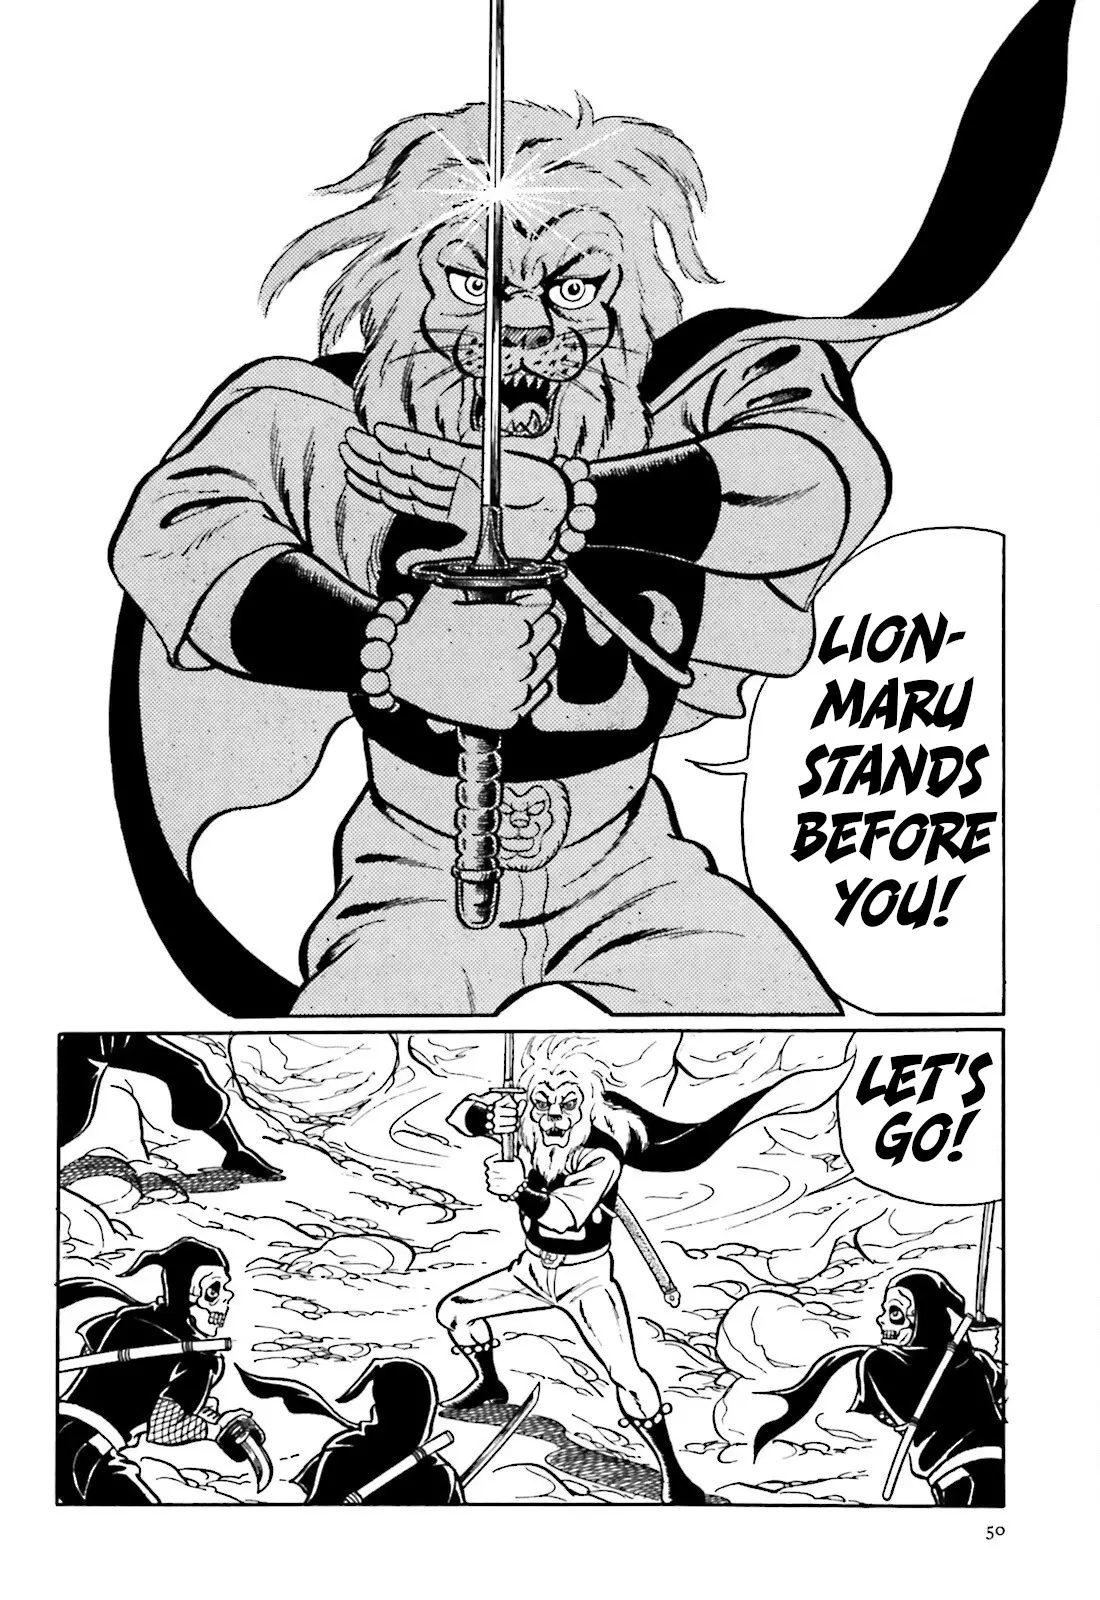 The Vigilant Lionmaru - 1 page 38-81f7e32c